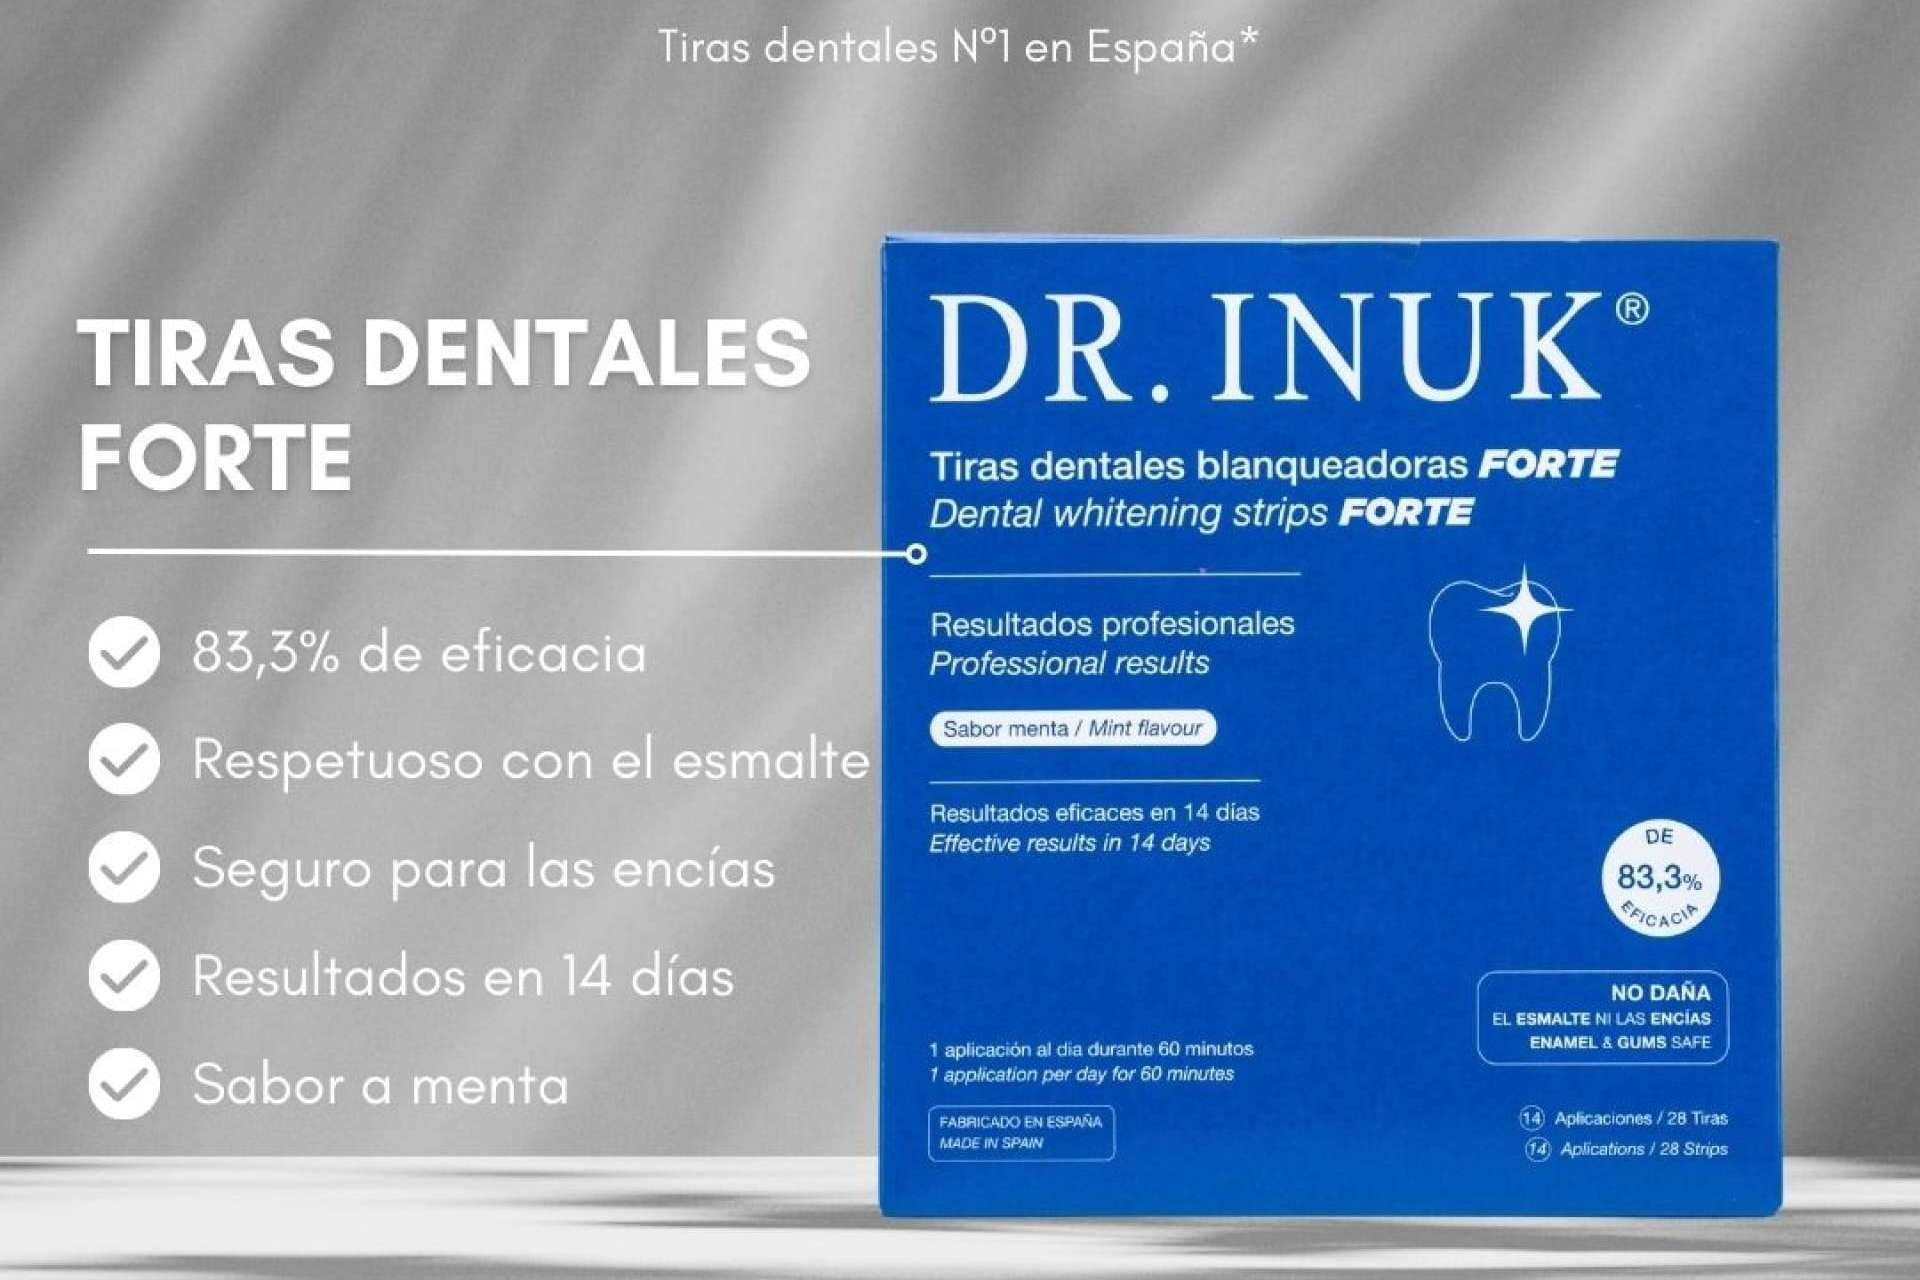  Dr. INUK desarrolla tiras dentales blanqueadoras apostando por el futuro del cuidado bucal 